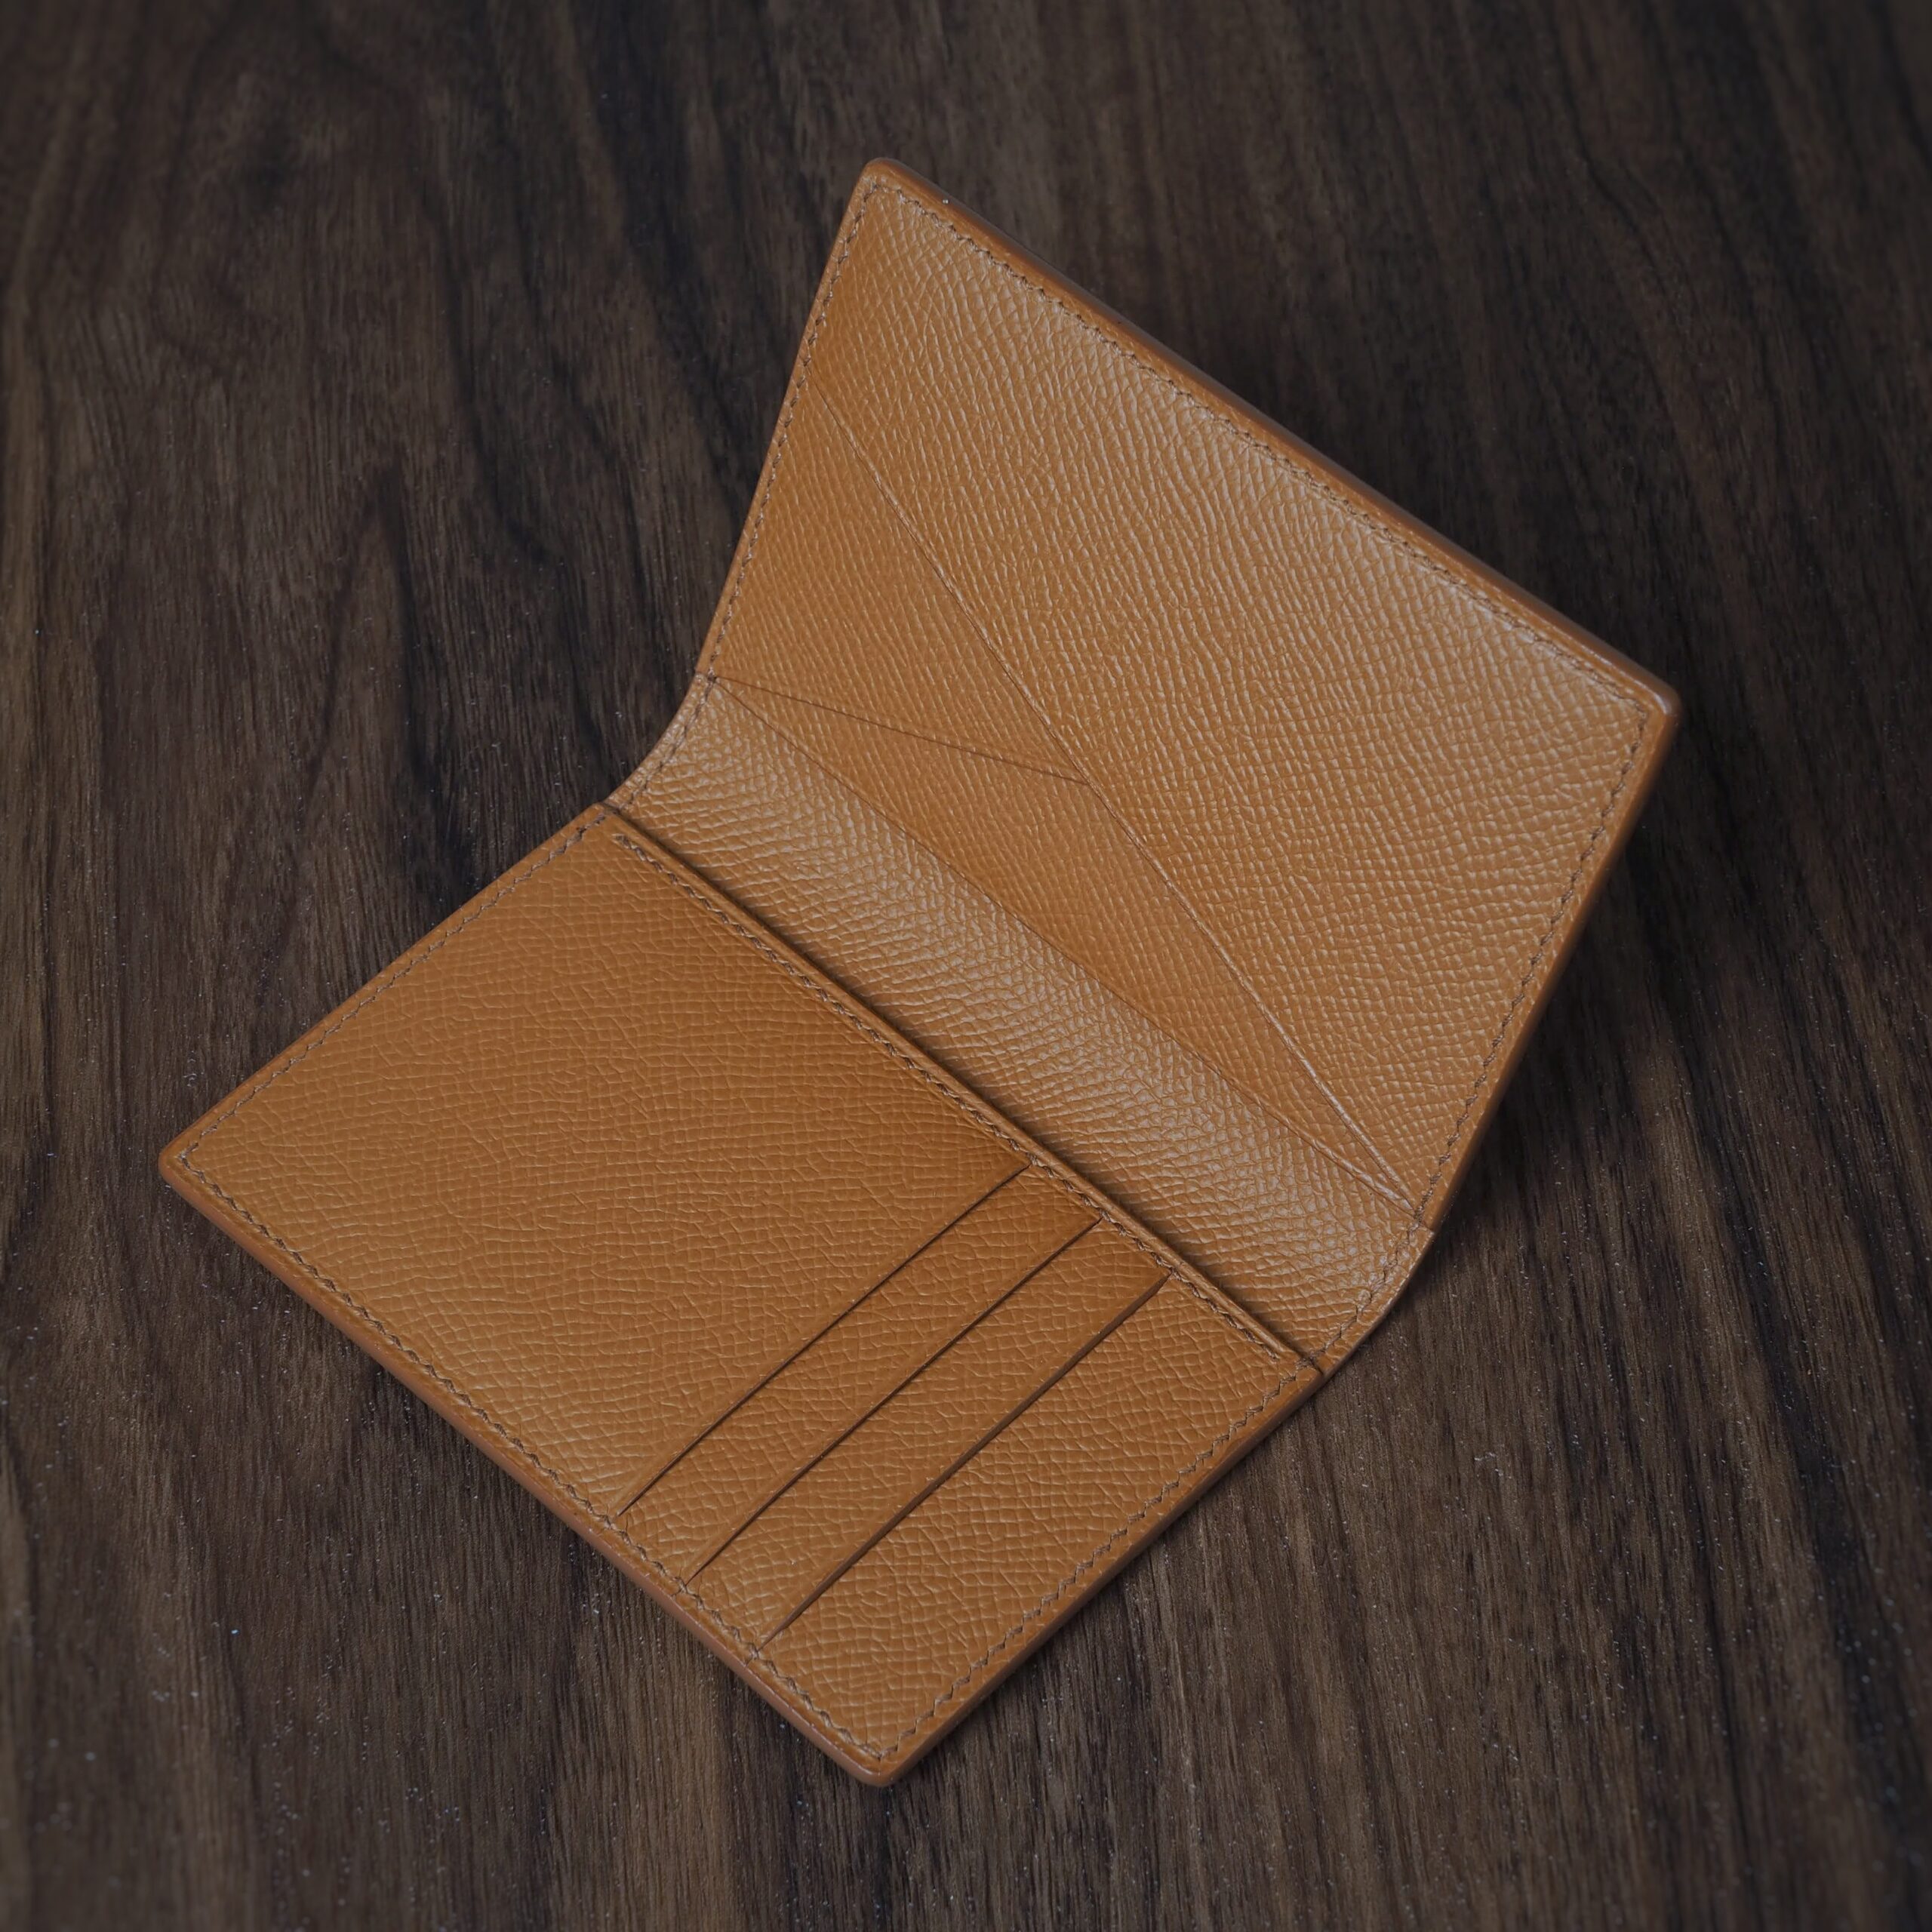 Hermes Orange Leather Bi-Fold Wallet Hermes